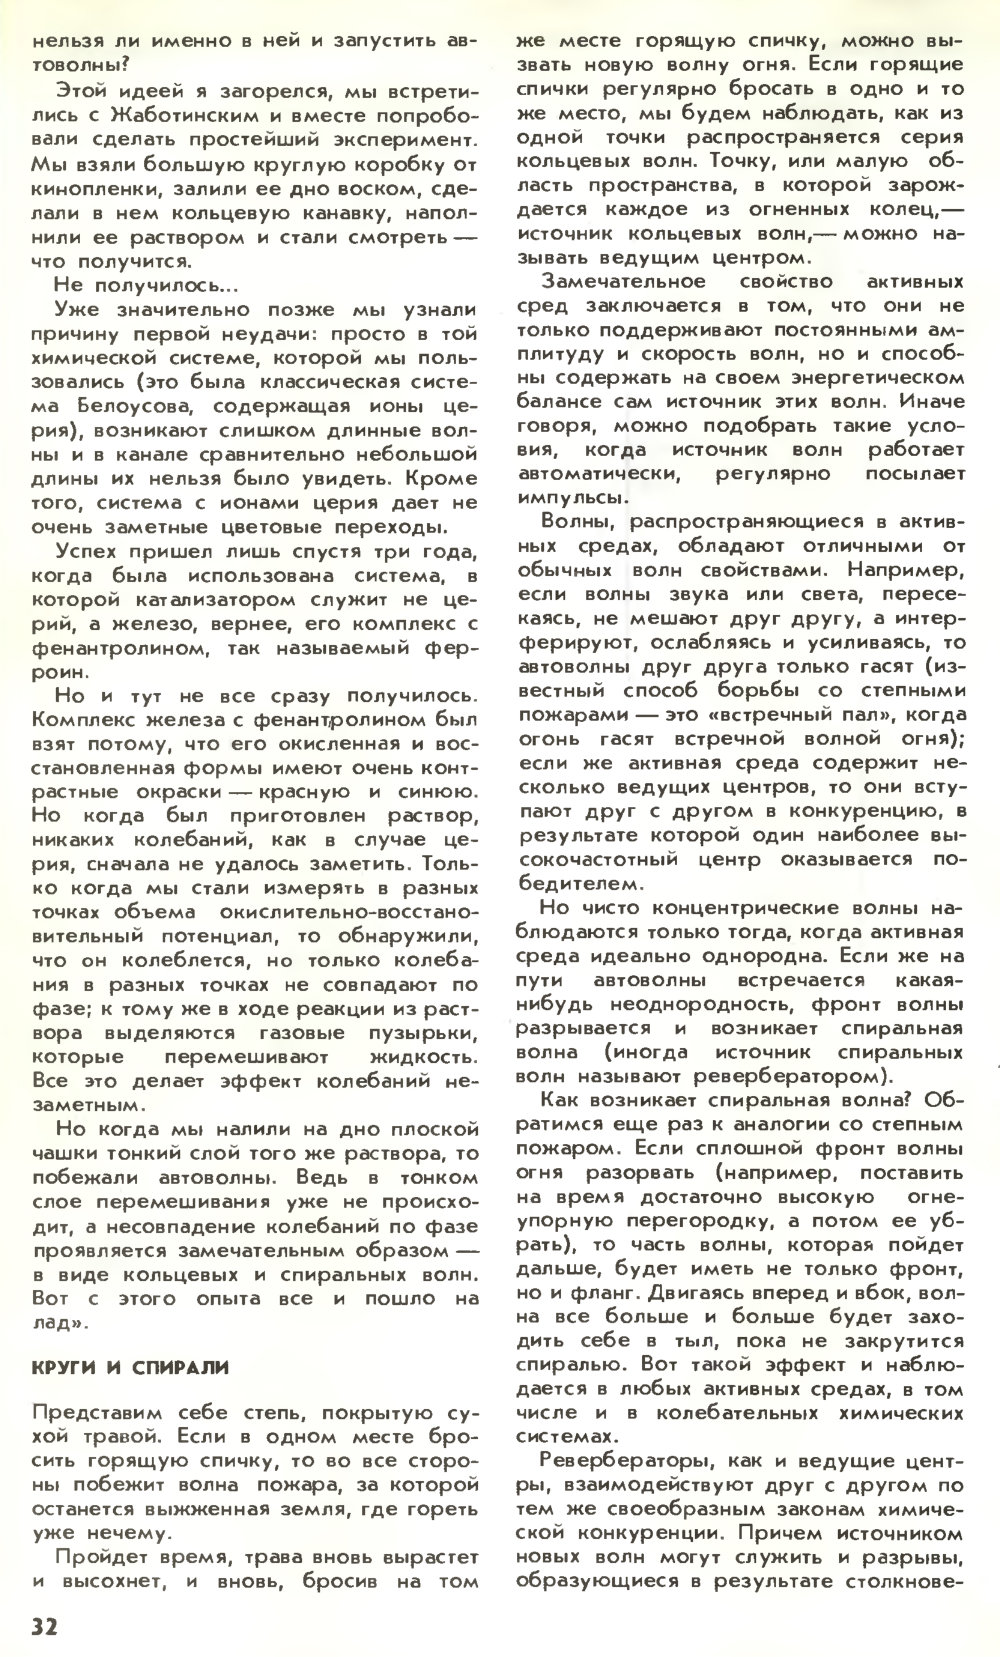 В мире автоволн. М. Ларин. Химия и жизнь, 1980, №11, с.30-33. Фотокопия №3